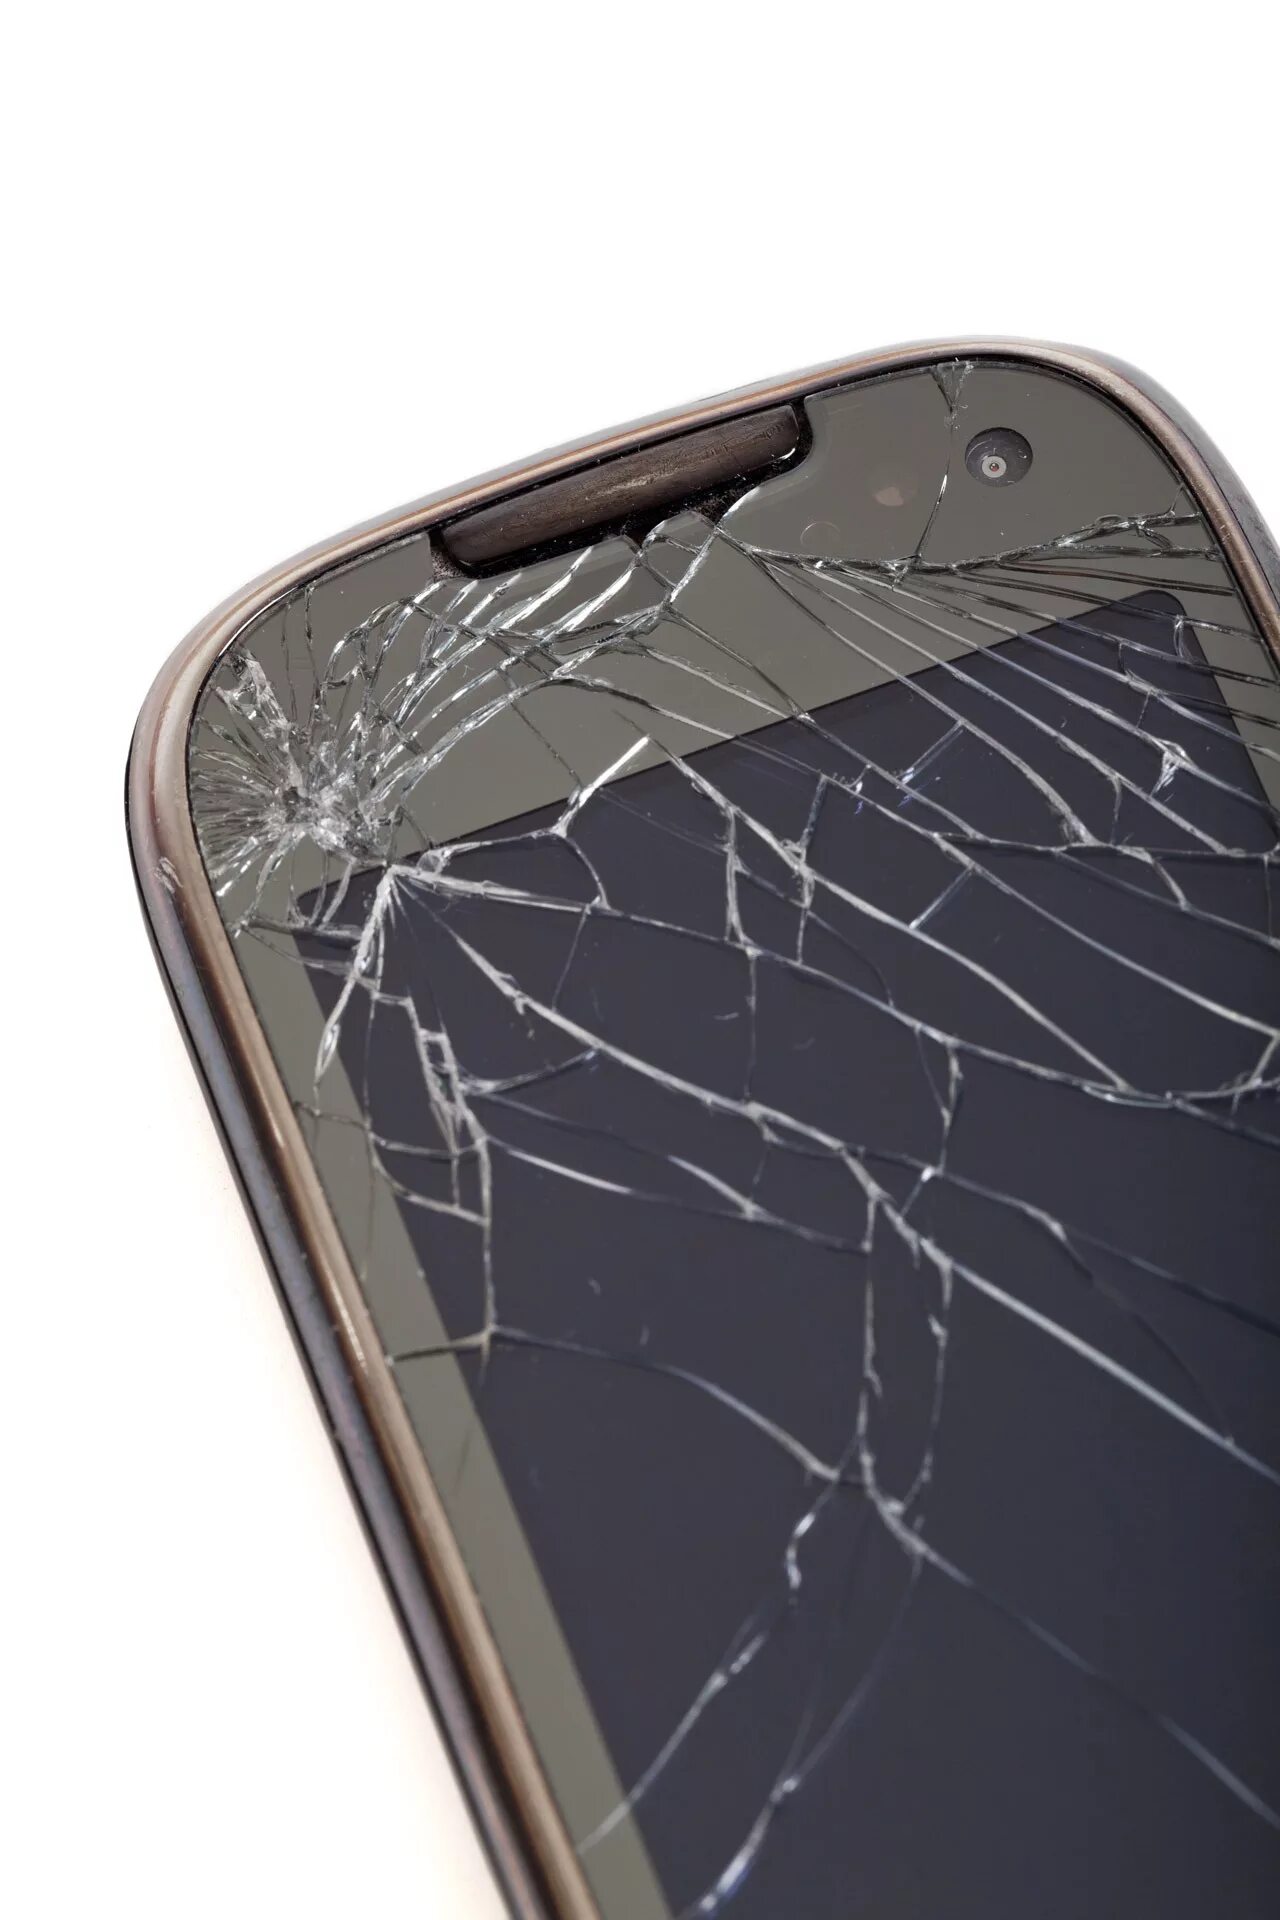 Купить телефон не разбиваемый. Разбитый смартфон. Треснуло стекло на телефоне. Сломанный смартфон. Битый дисплей смартфона.